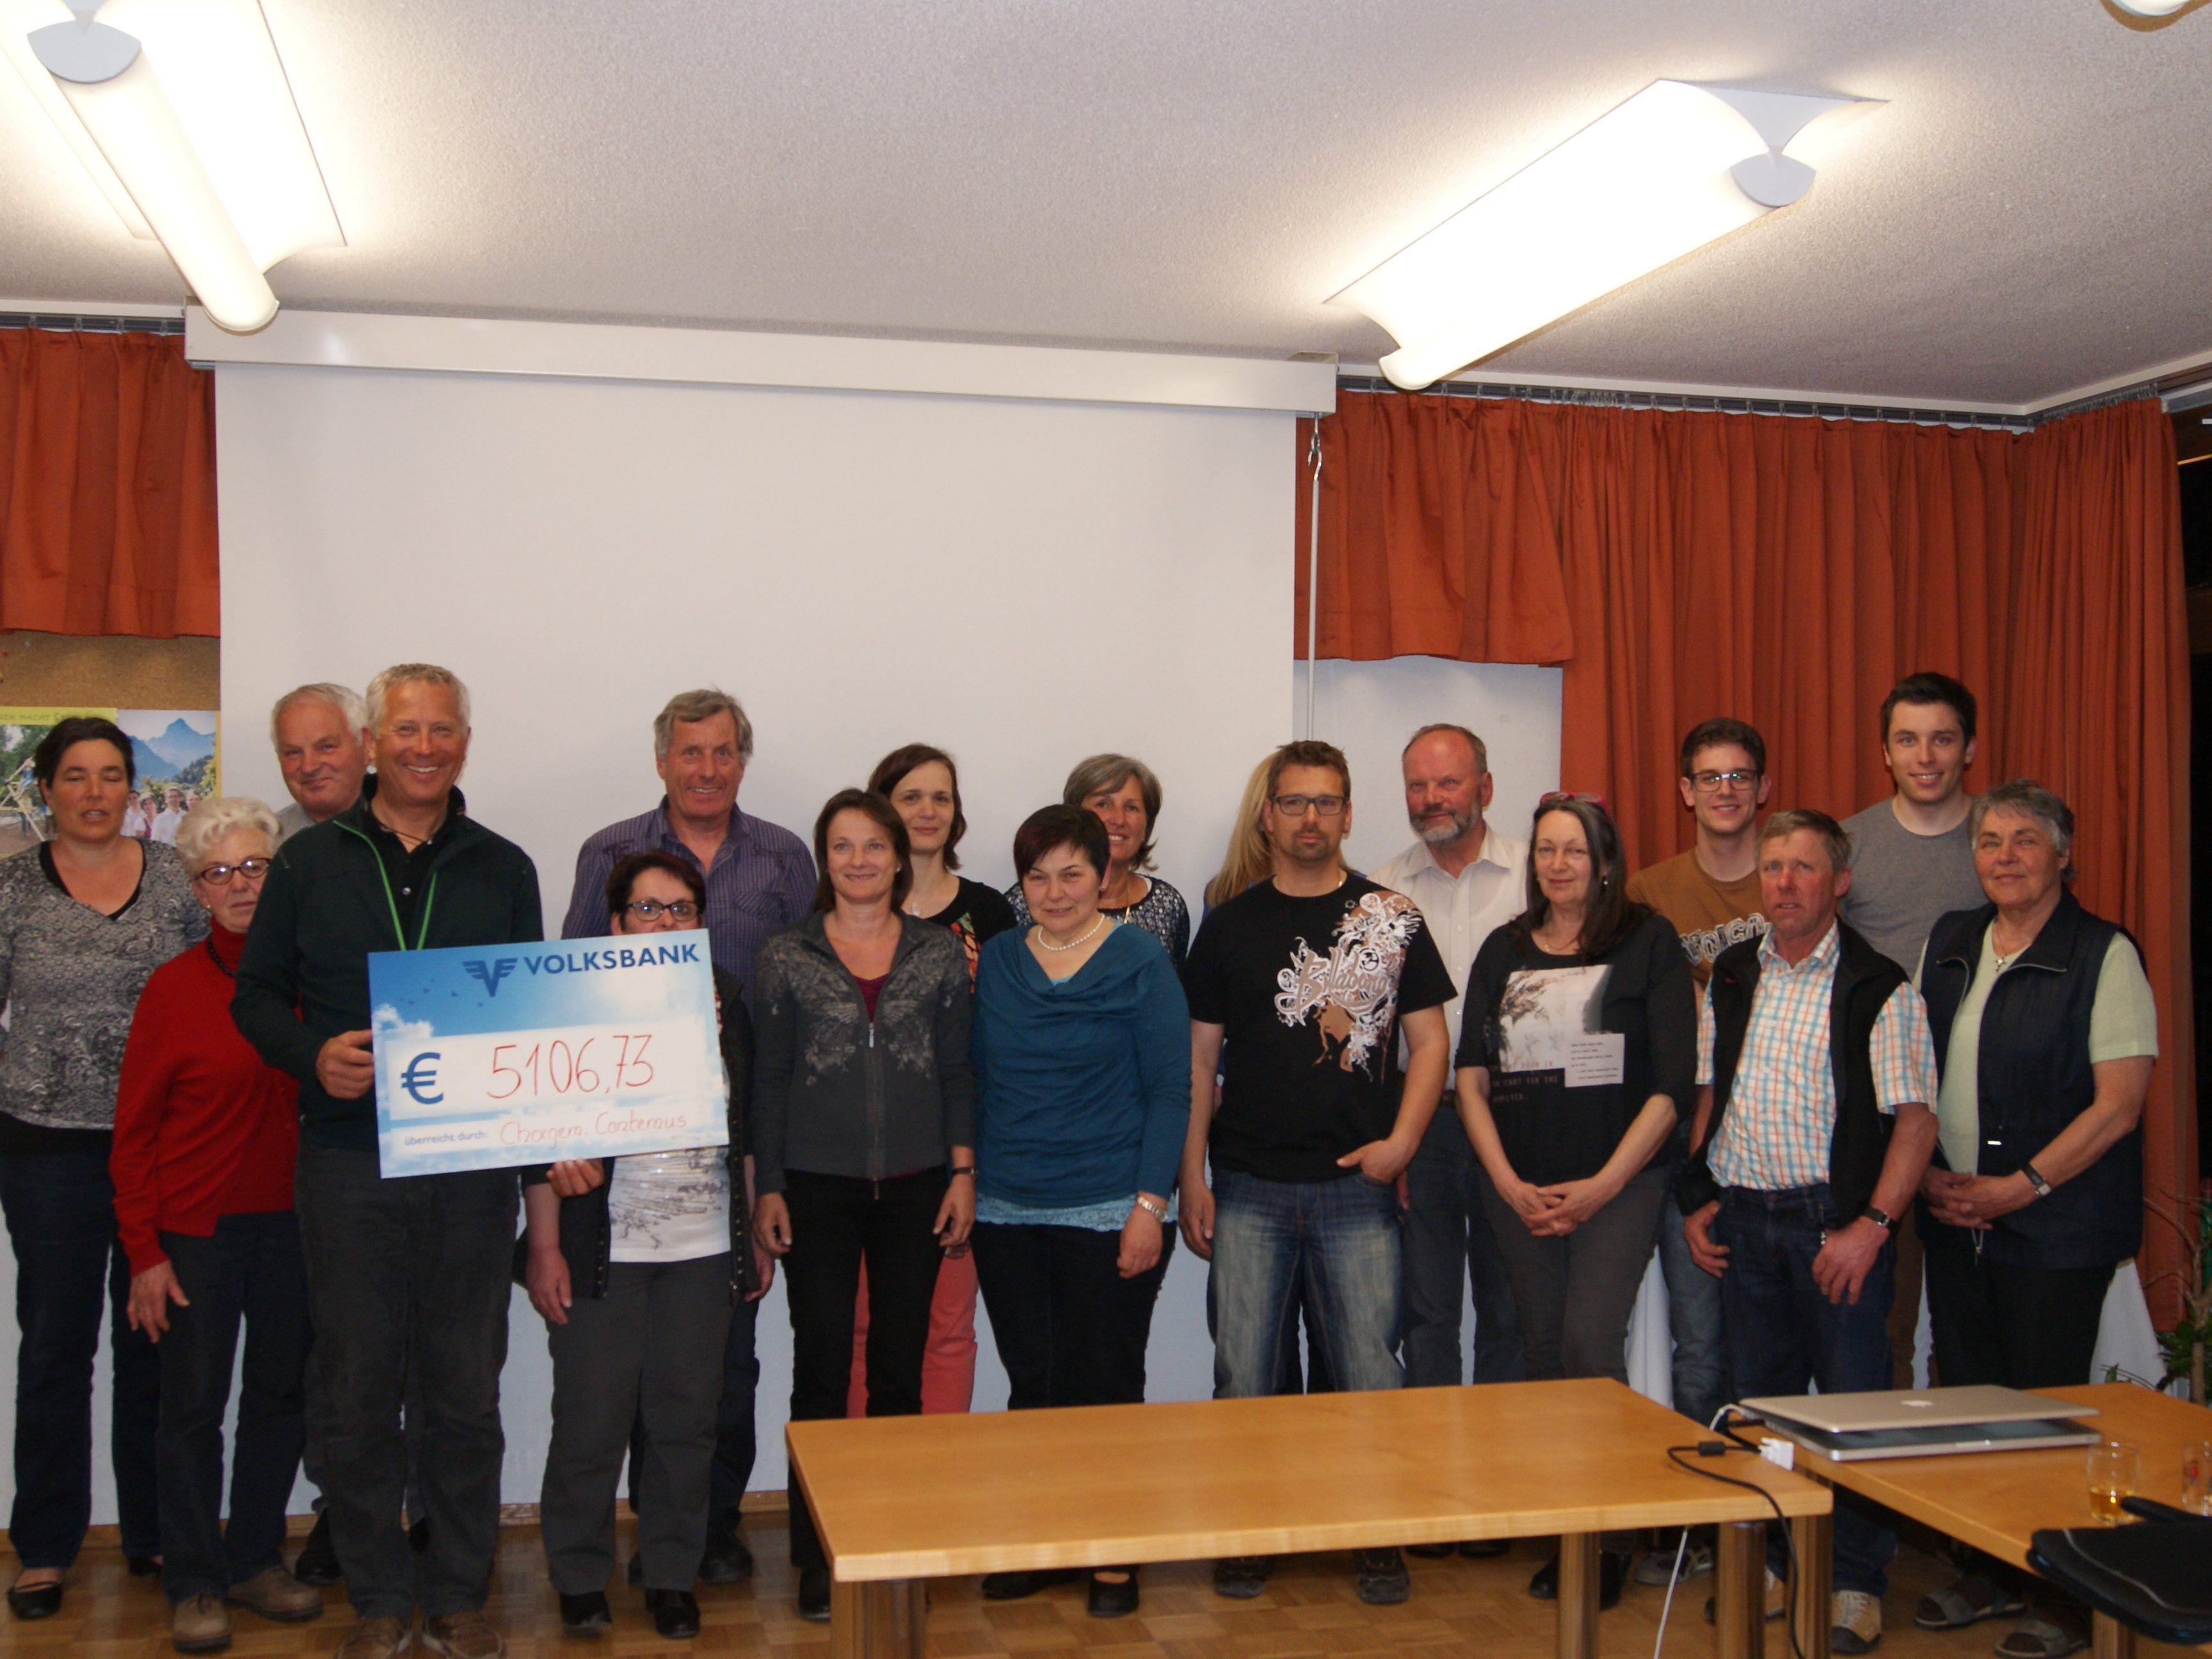 Die Chorgemeinschaft Cantemus konnte einen Spendenscheck in Höhe von 5.106,73 an Bernd Fischer übergeben.